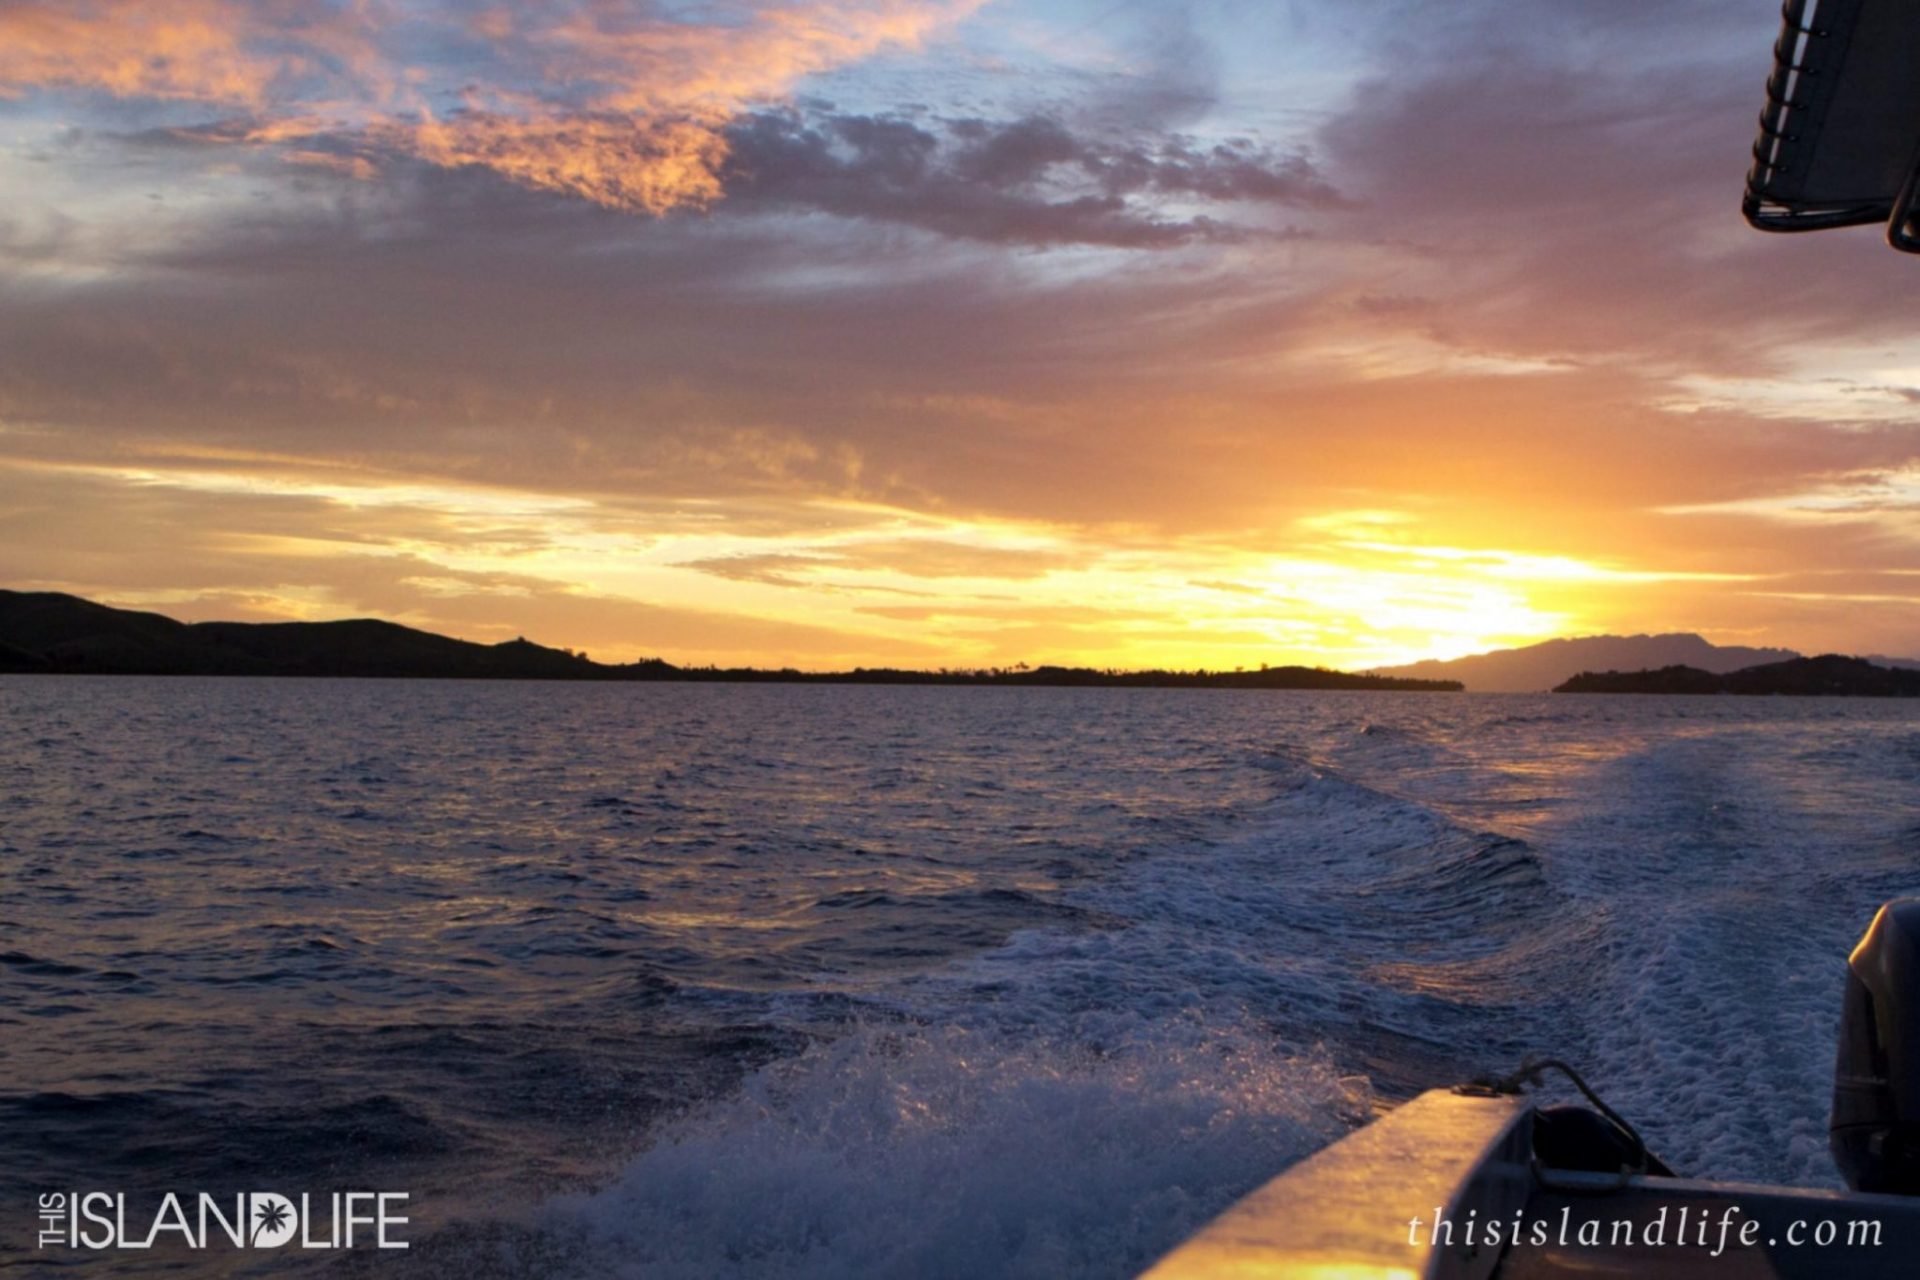 Cloudbreak Fiji | This Island Life